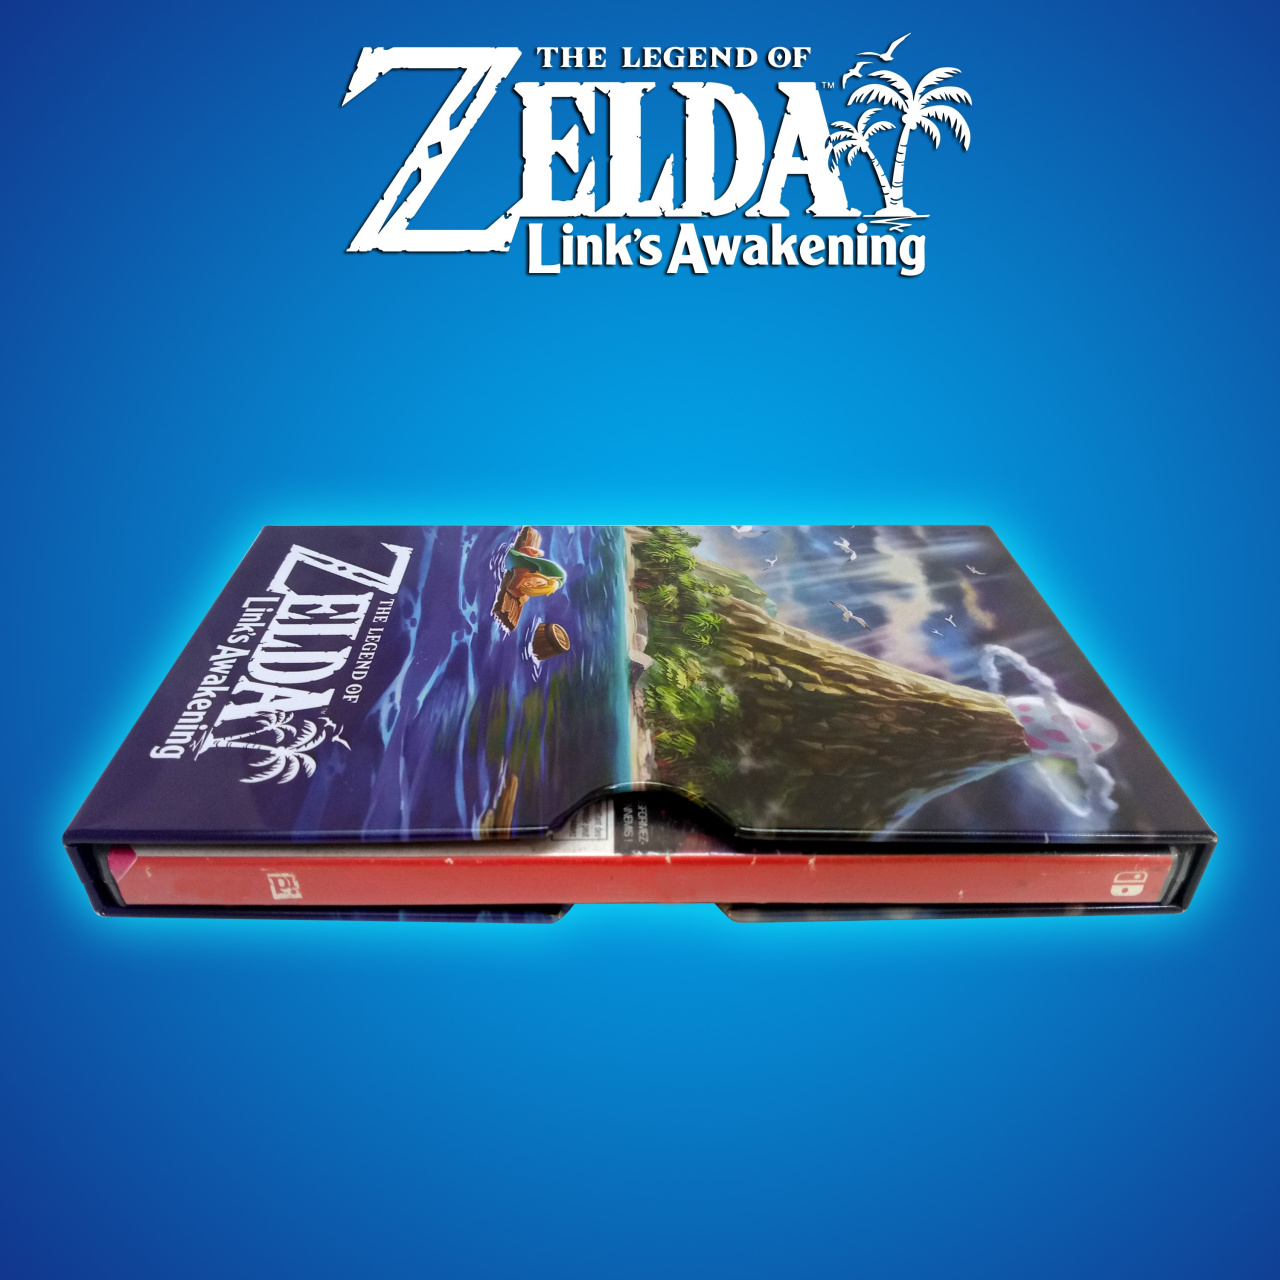 The Legend of Zelda Link's Awakening for Nintendo Switch Steelbook